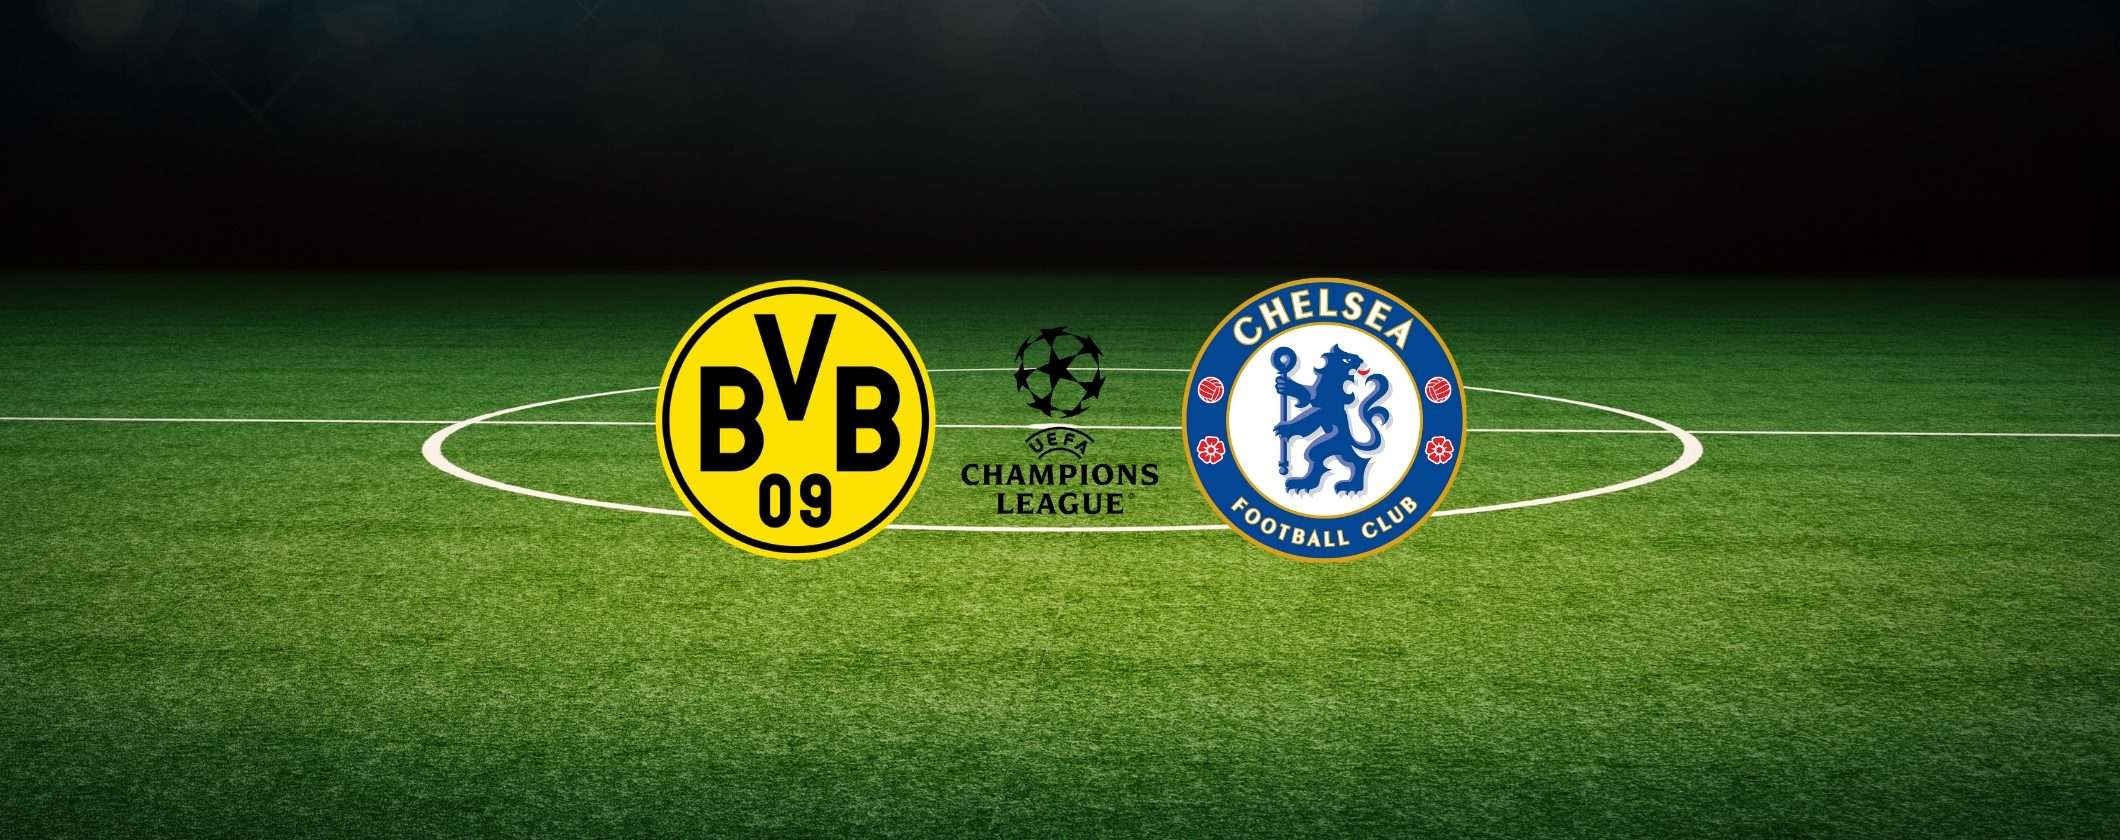 Borussia Dortmund-Chelsea GRATIS in streaming con Prime Video